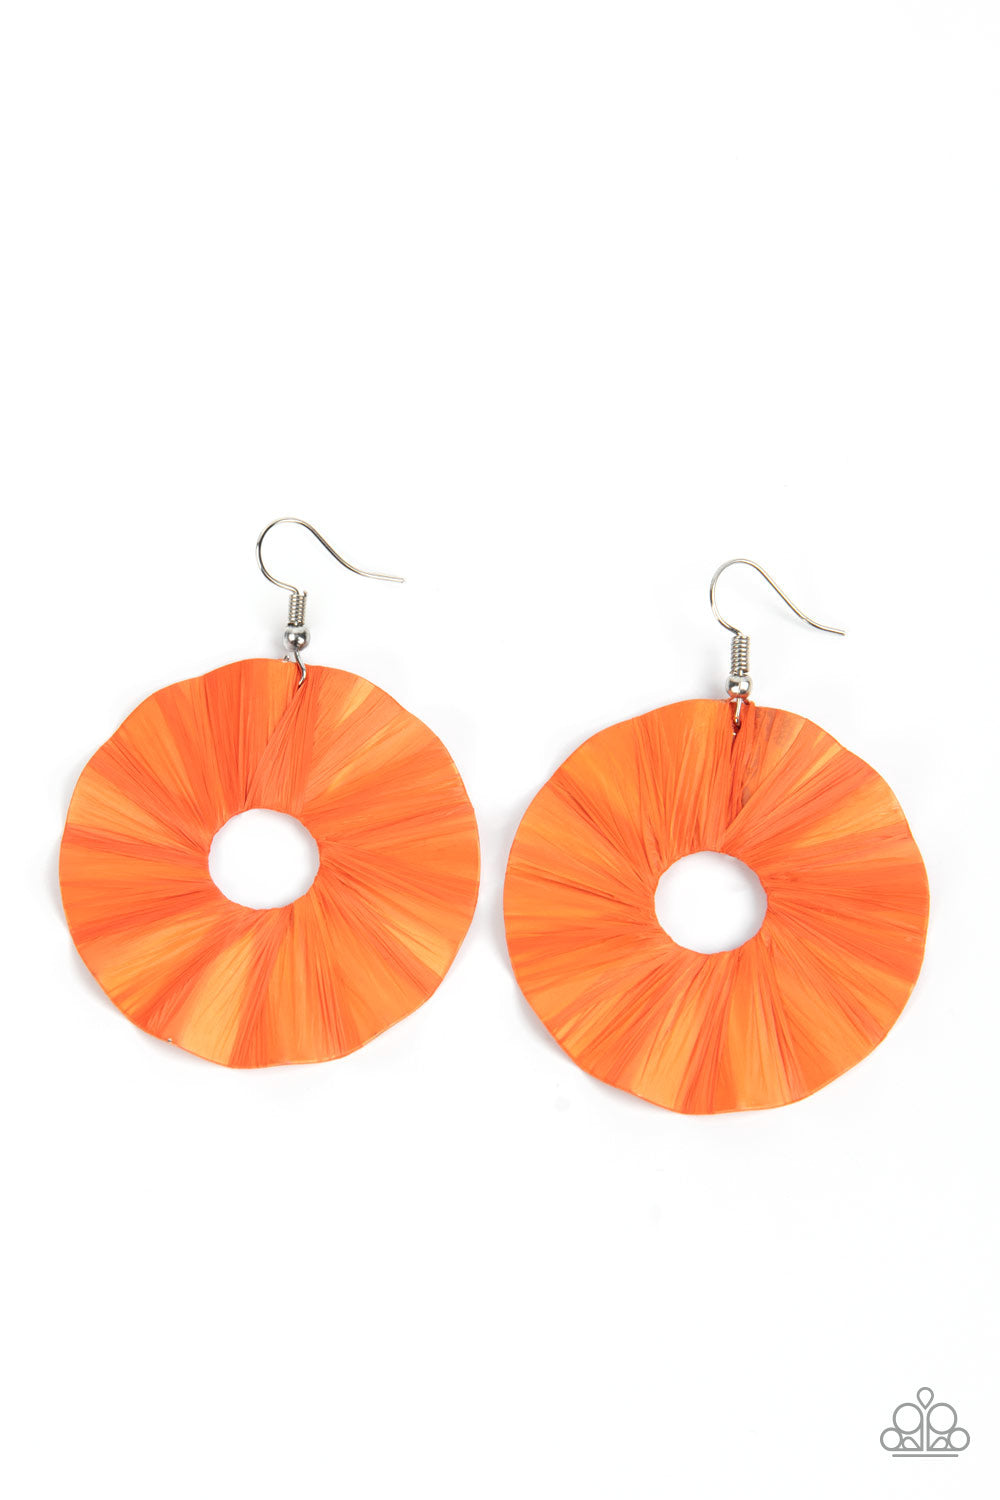 Fan the Breeze - Orange earring 823